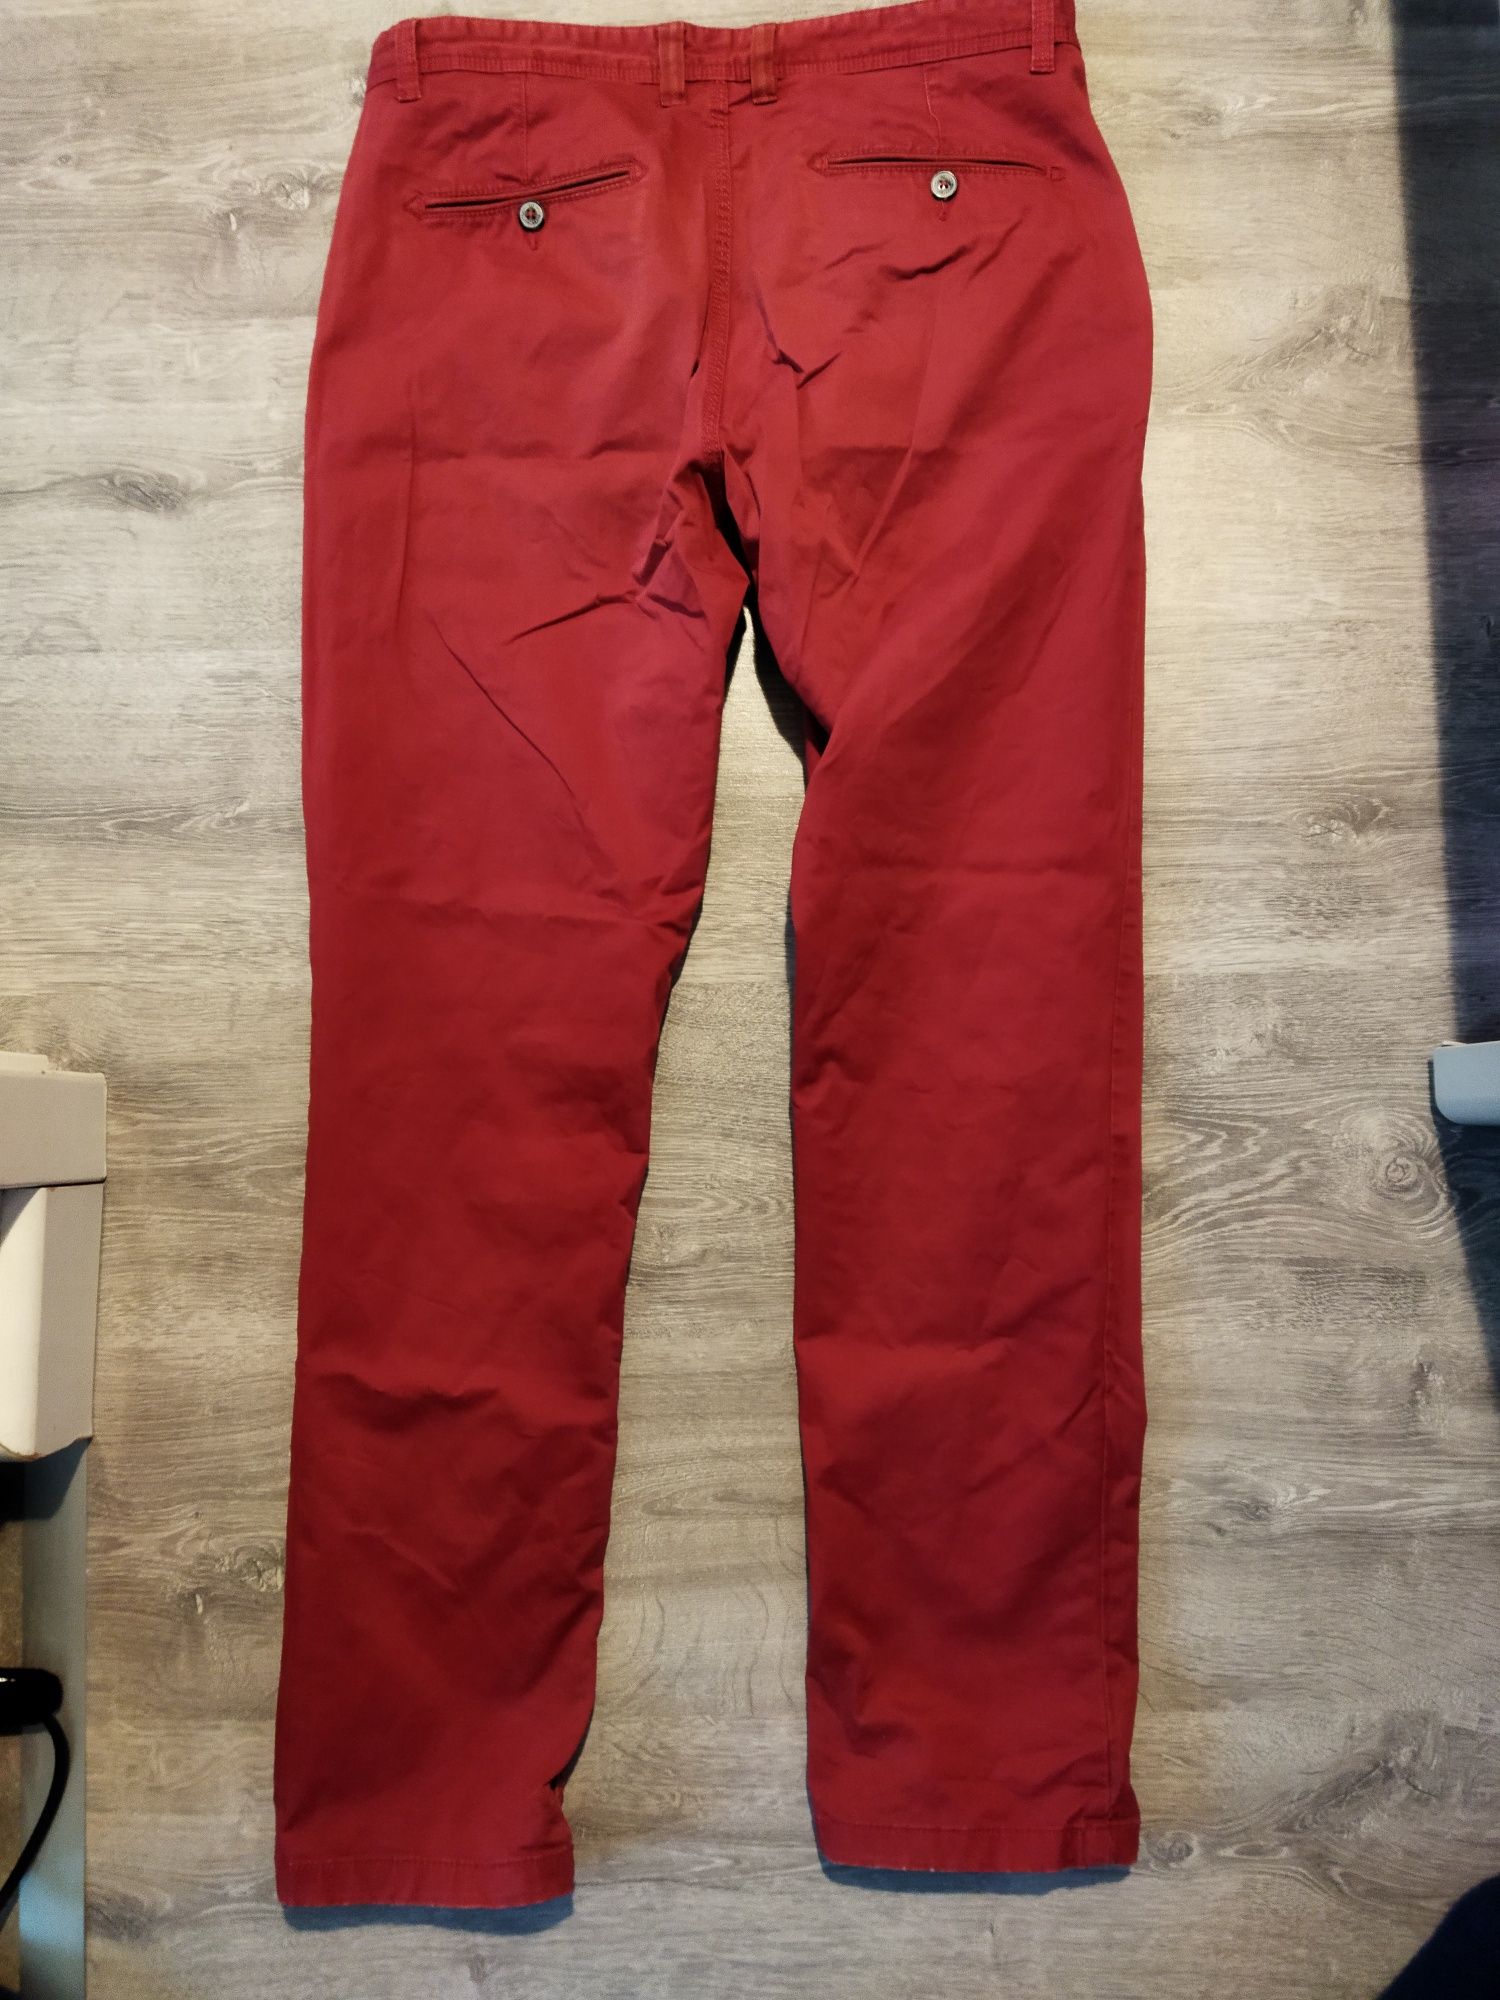 Spodnie Carry formal 32/32 czerwone bordowe